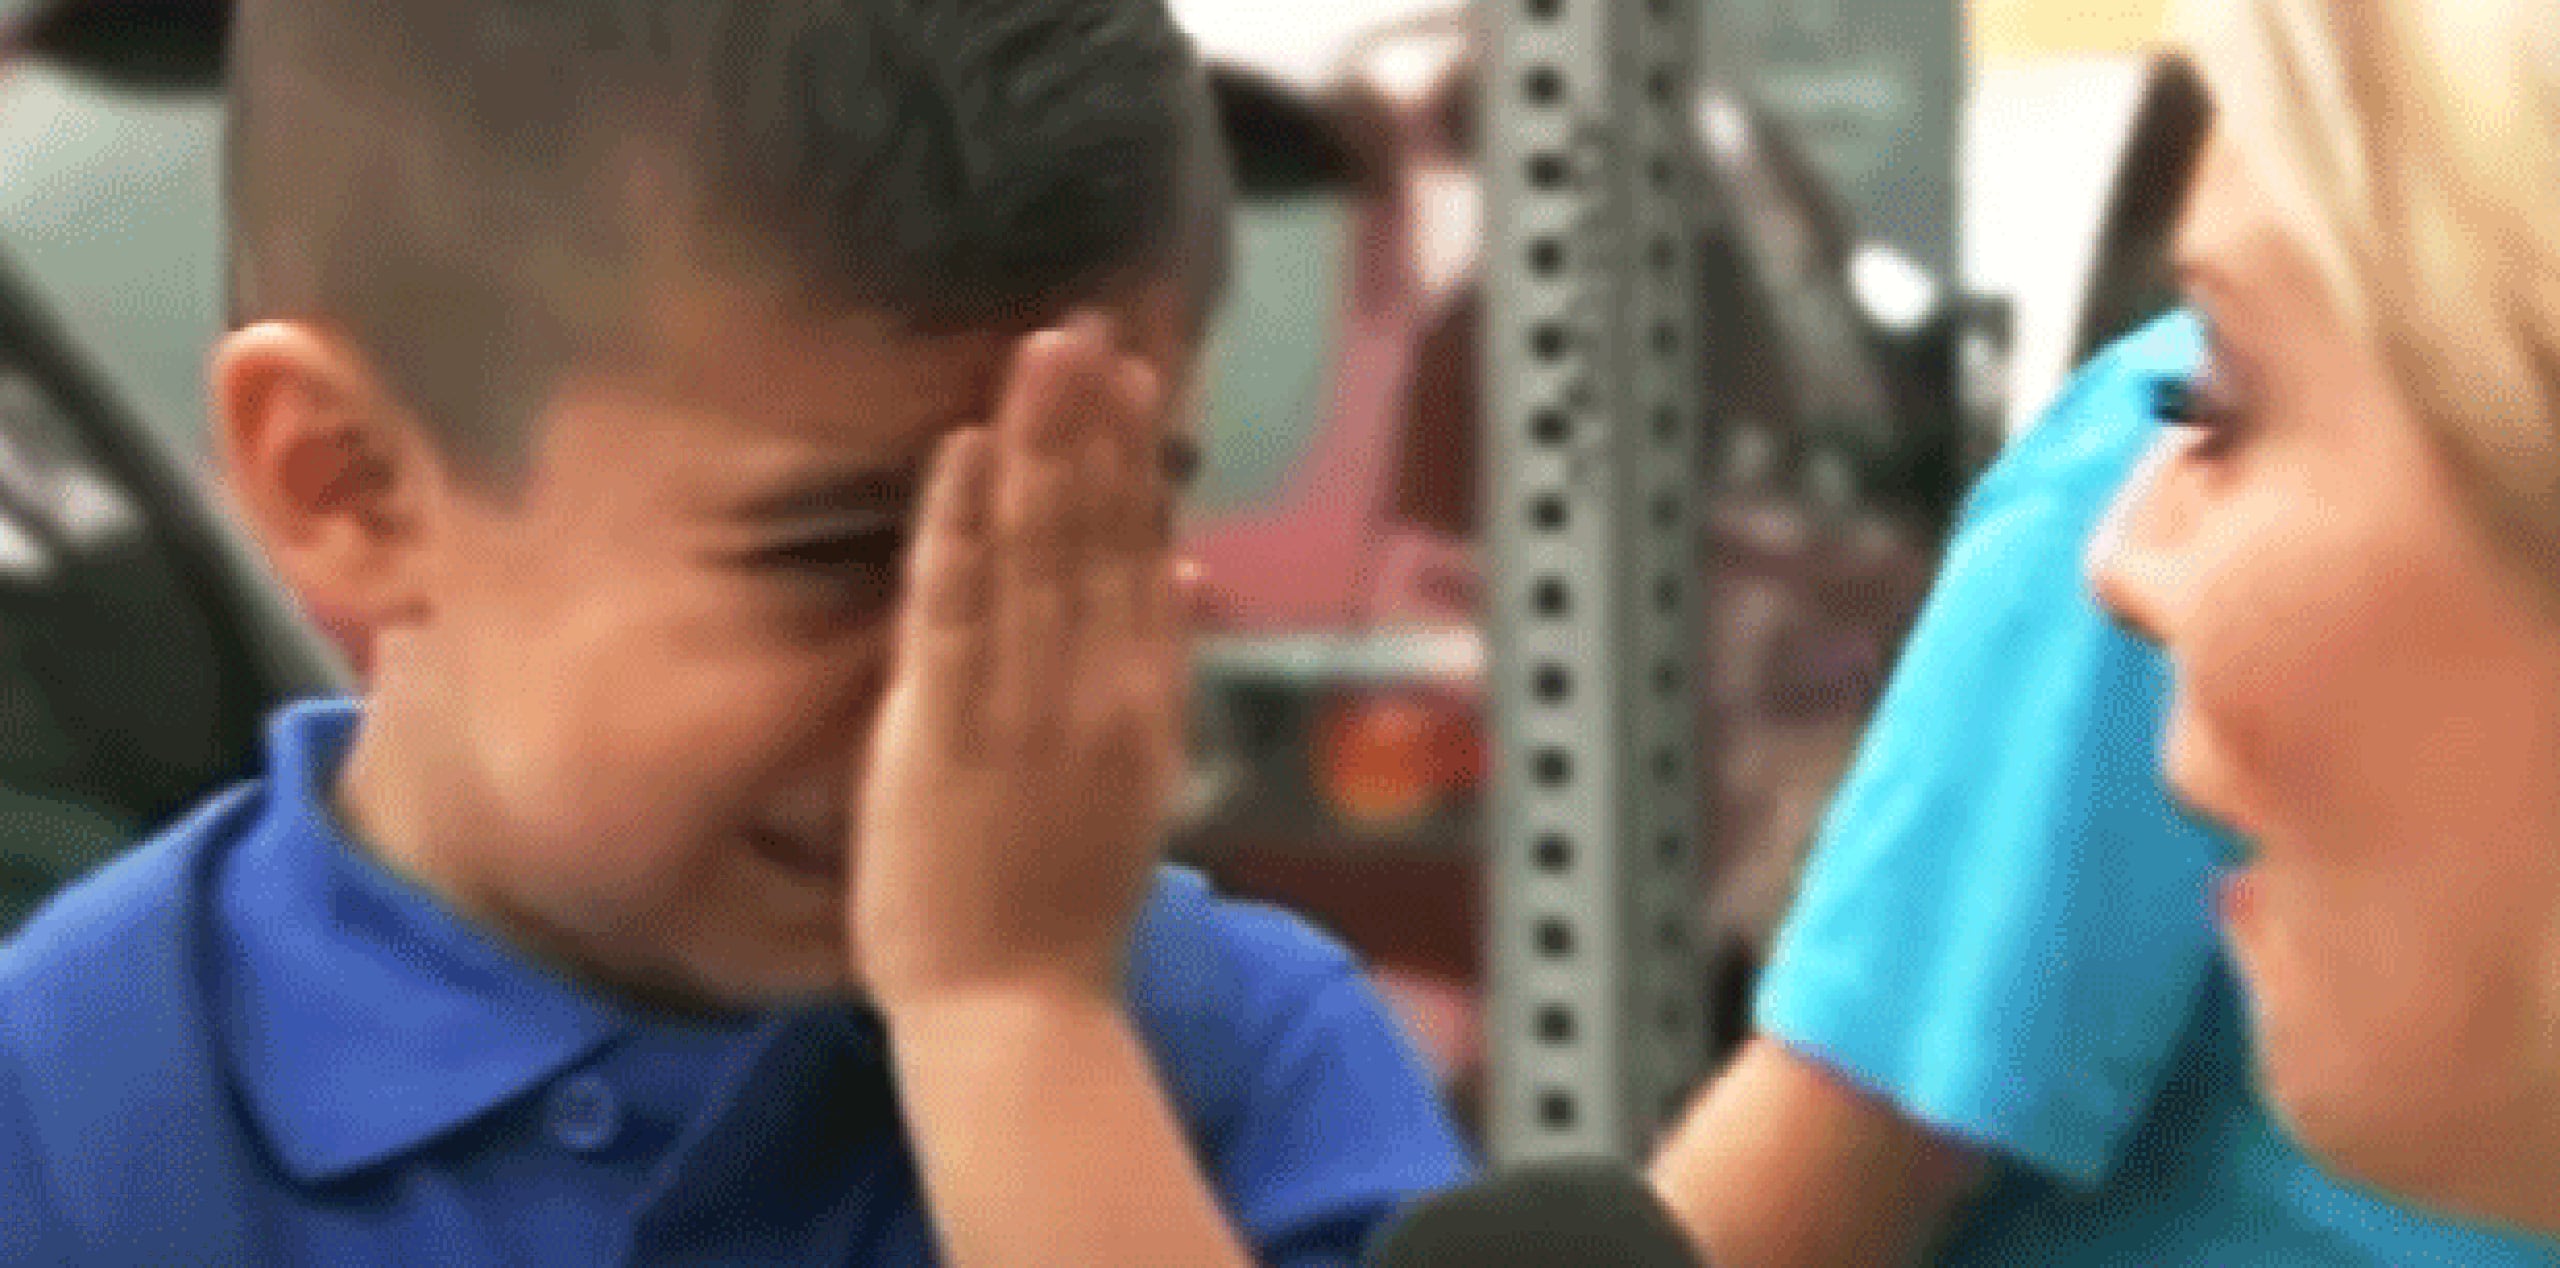 Cuando Friel  le preguntó al niño si extrañaba a su mamá, el menor, que contestó que no, de pronto, se pone sus manitas en las caras y comienza a llorar sin consuelo. (YouTube)